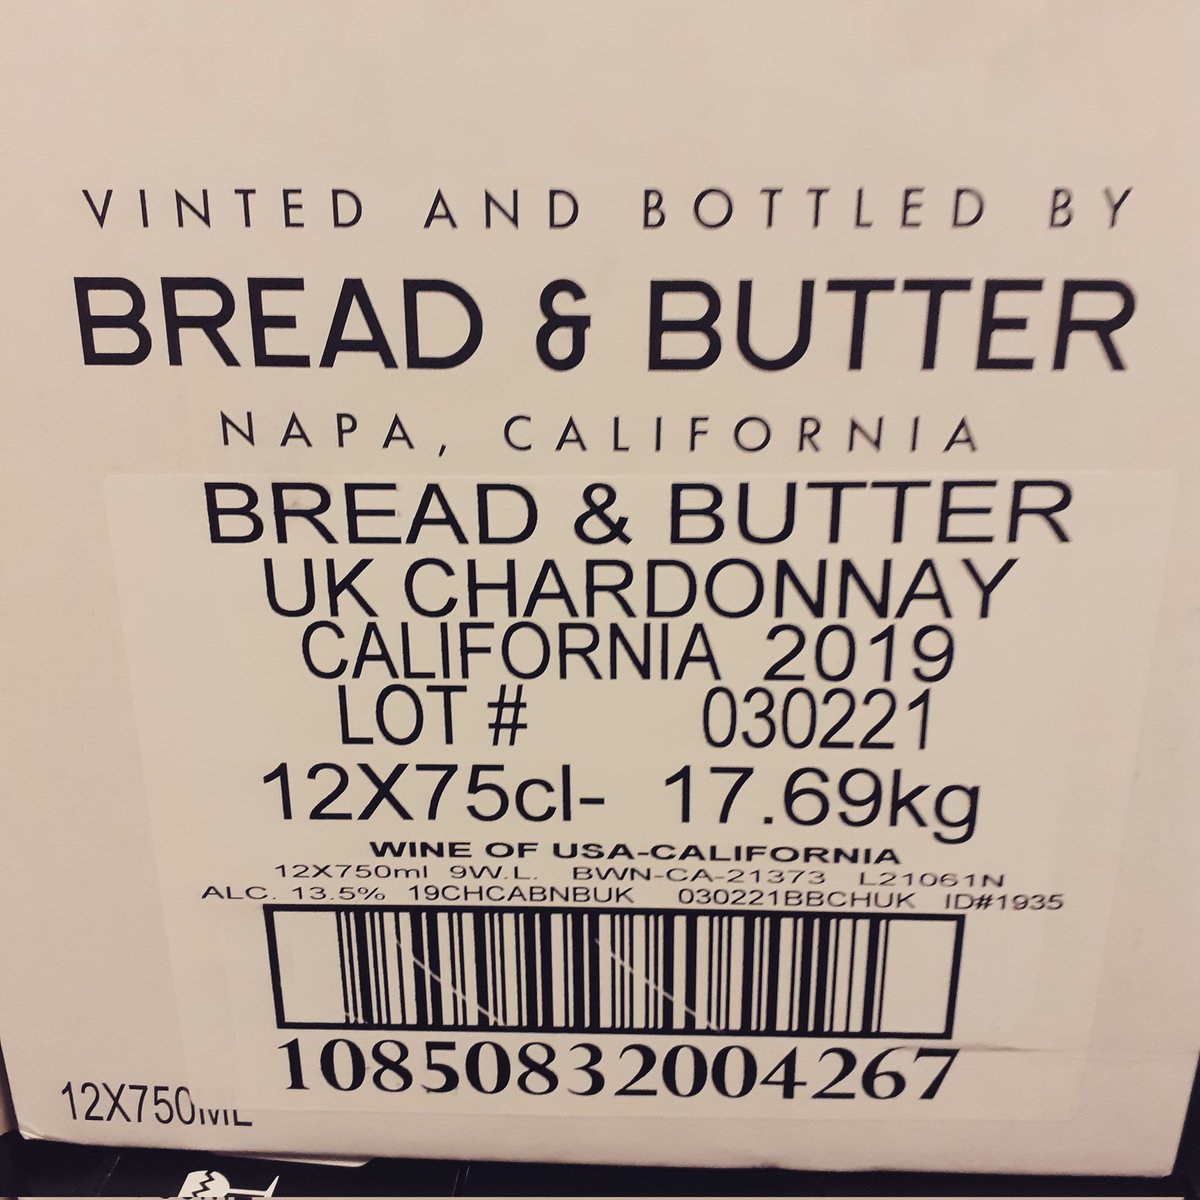 It's back (but @£9.99 mix 6) not for long
#breadandbutterwines #majesticwine #chiswick #chardonnay